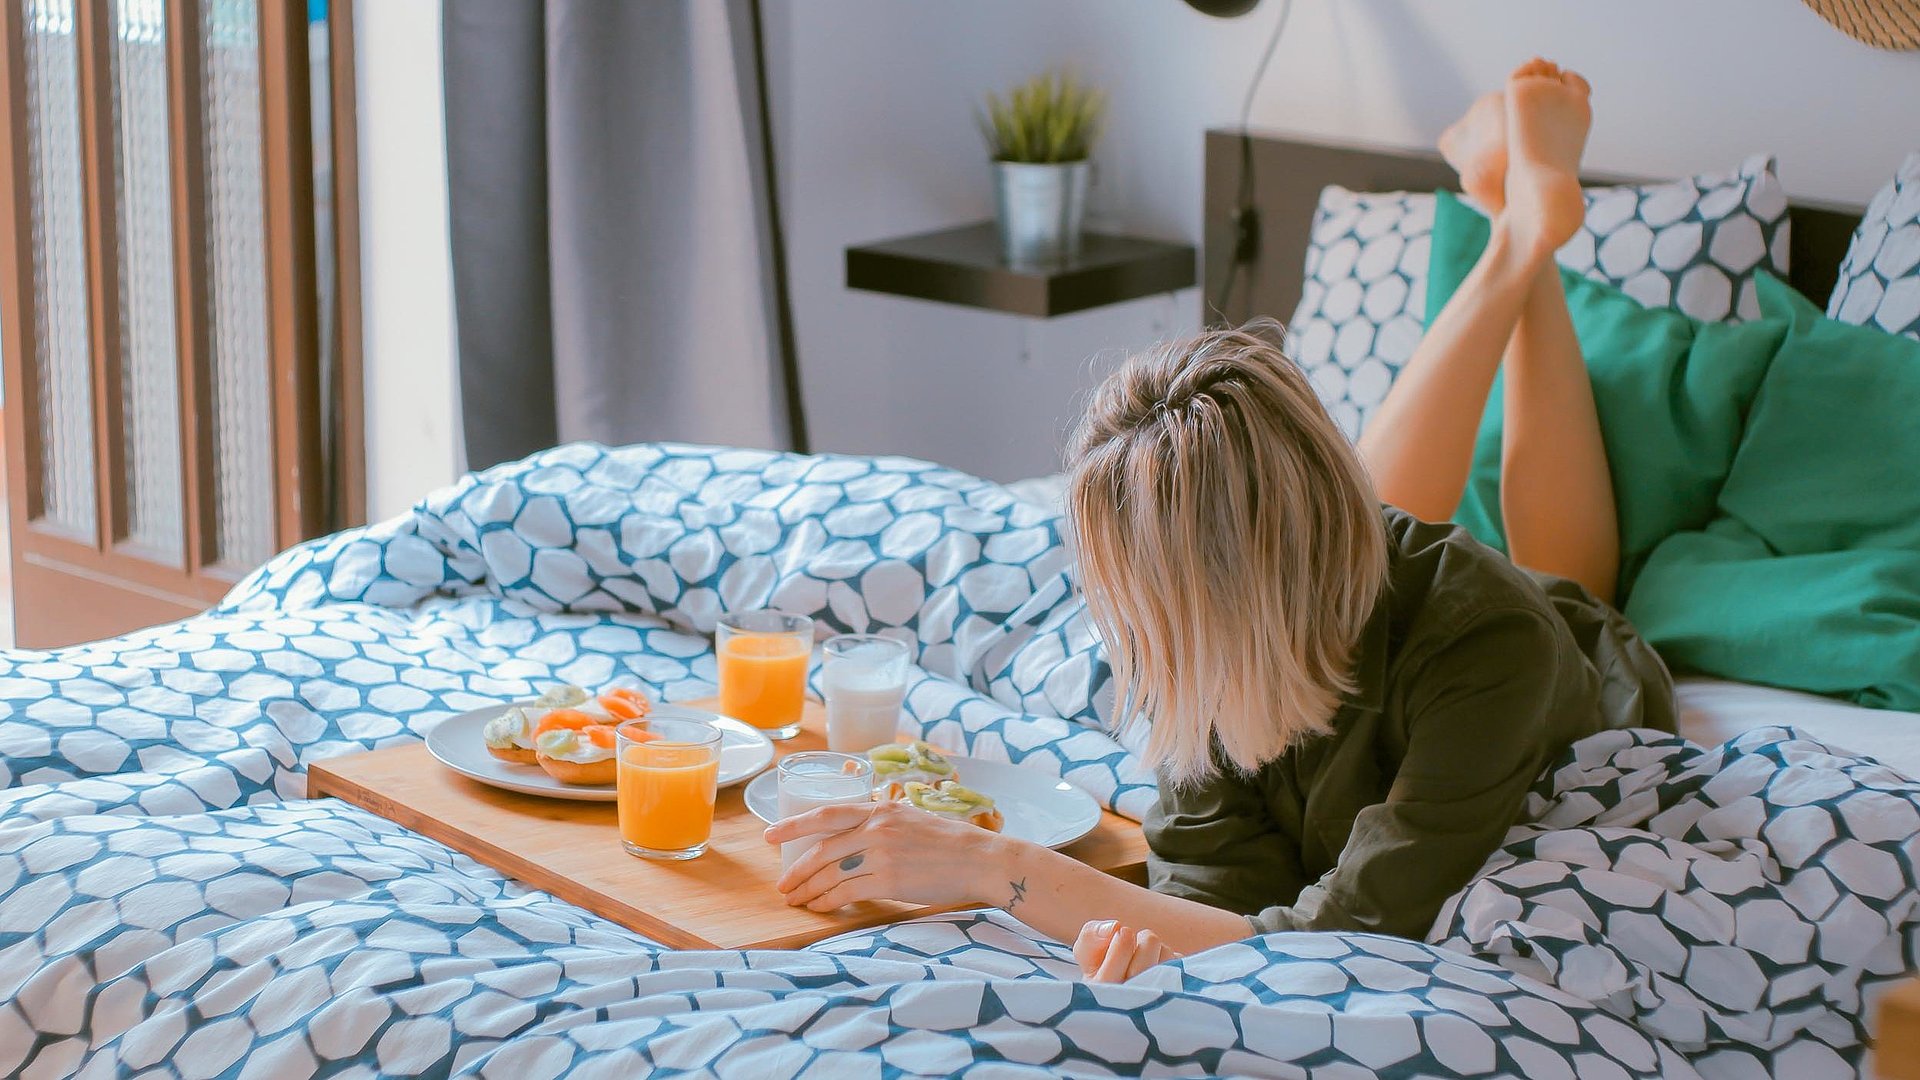 Übernachten Video in Franken - junge blonde Frau liegt im Bett neben einer Frühstücksplatte, gefüllt mit O-Saft, Milch und belegten Brötchen